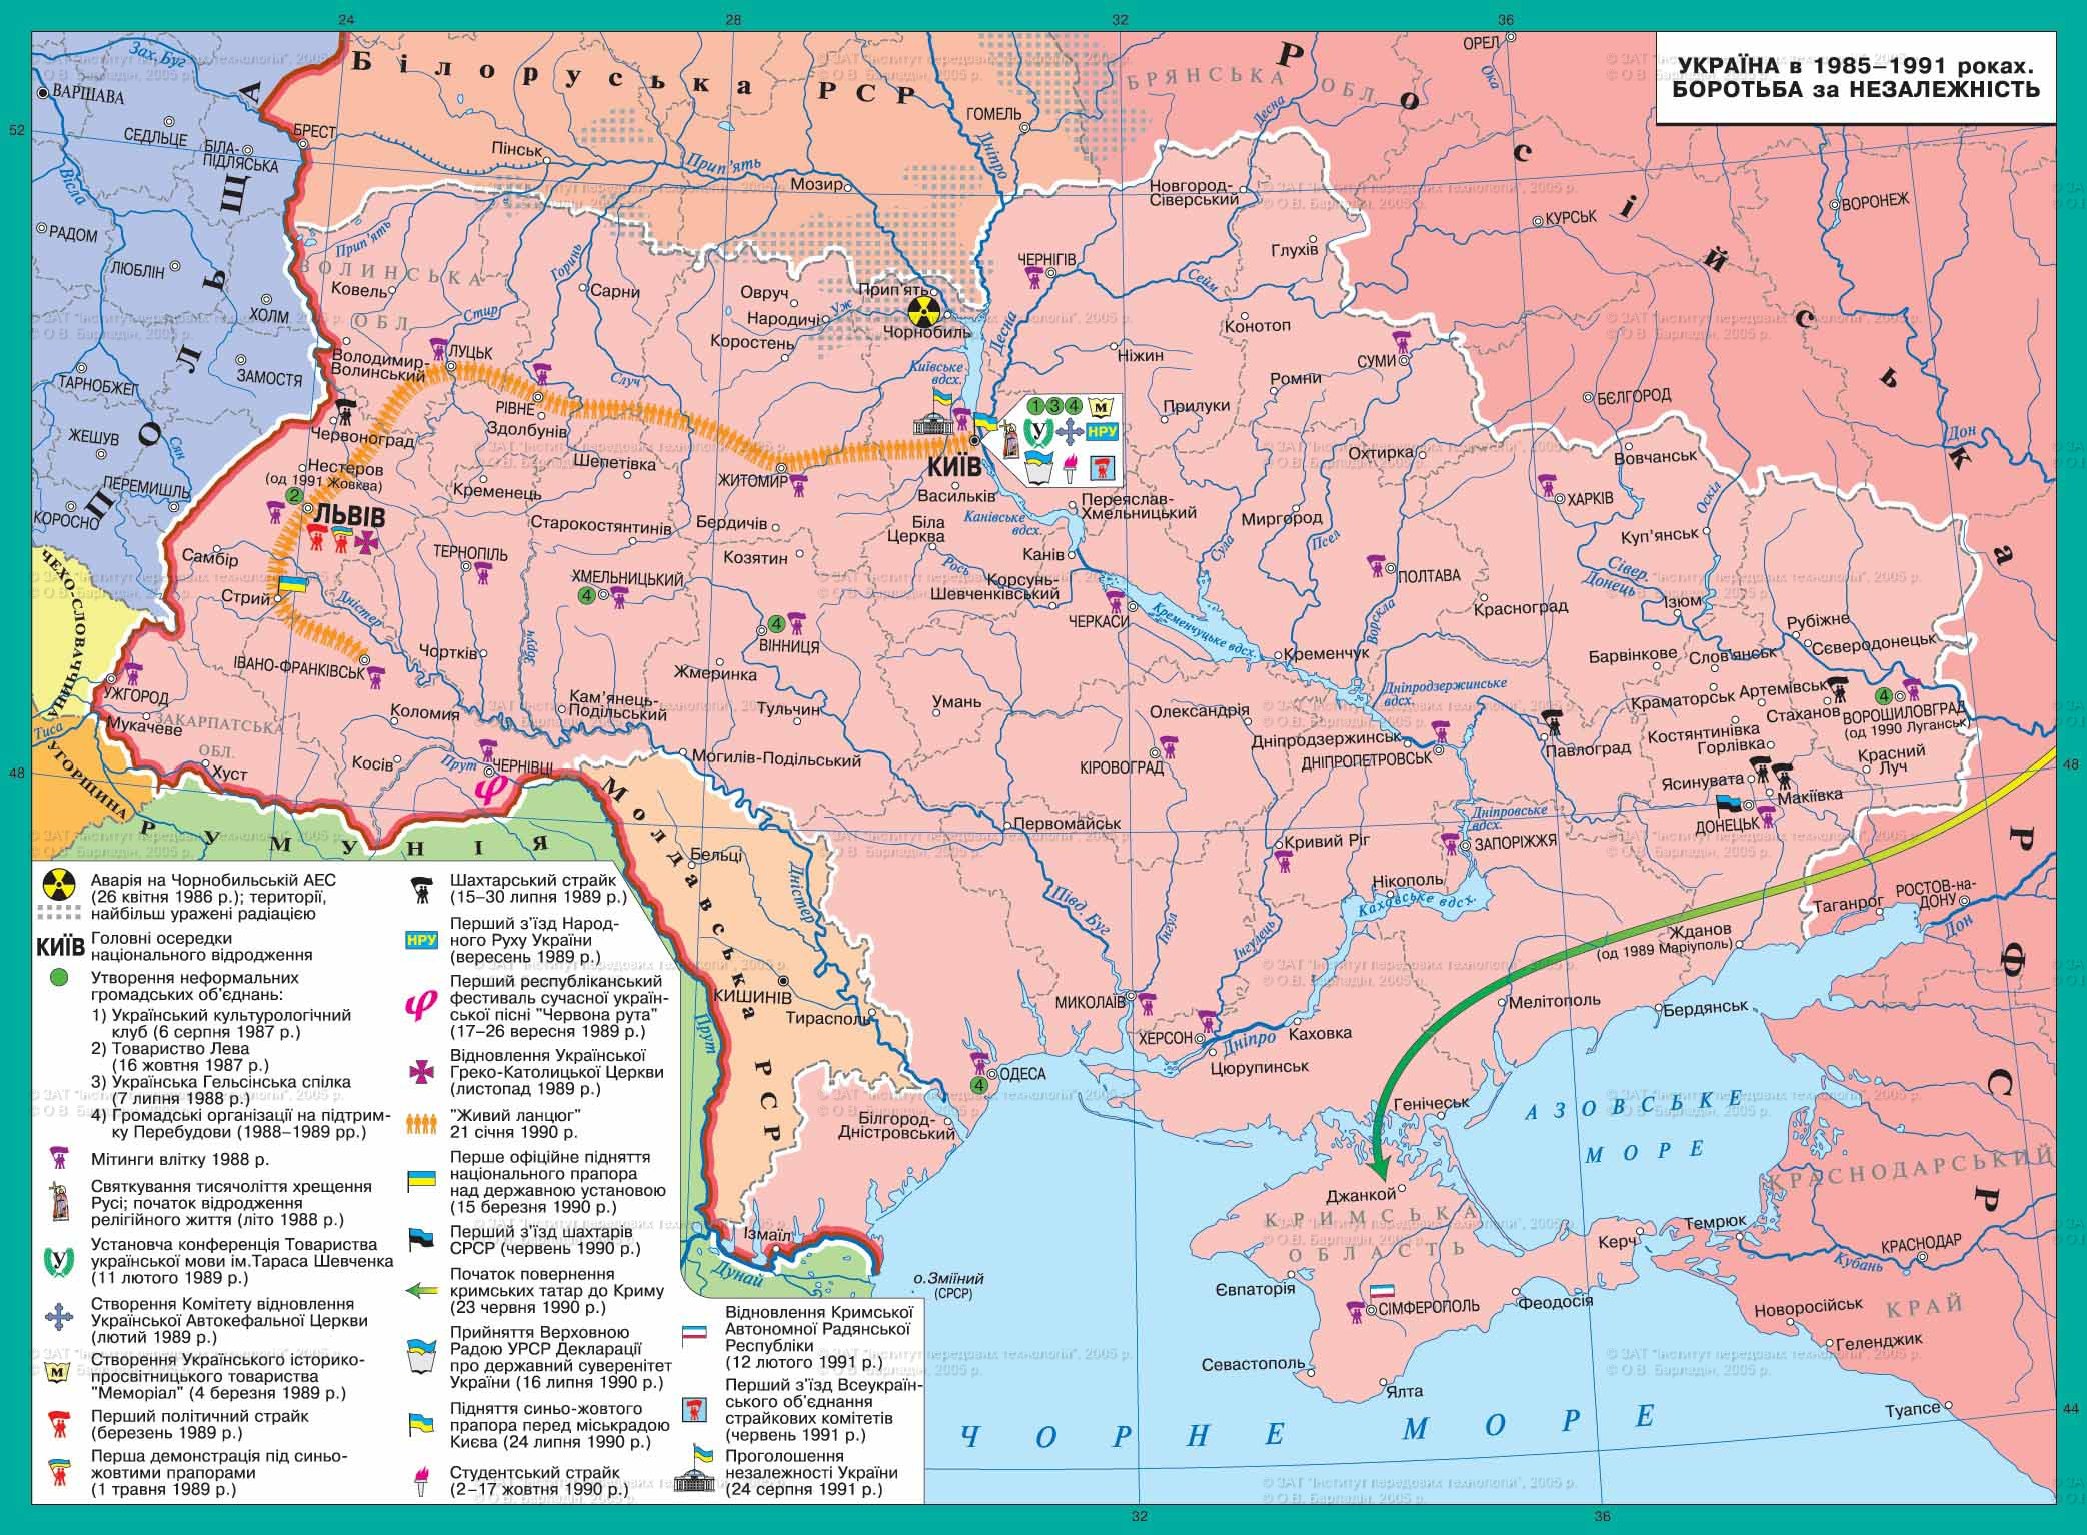 Украина в 1985 -1991 гг Борьба за независимость